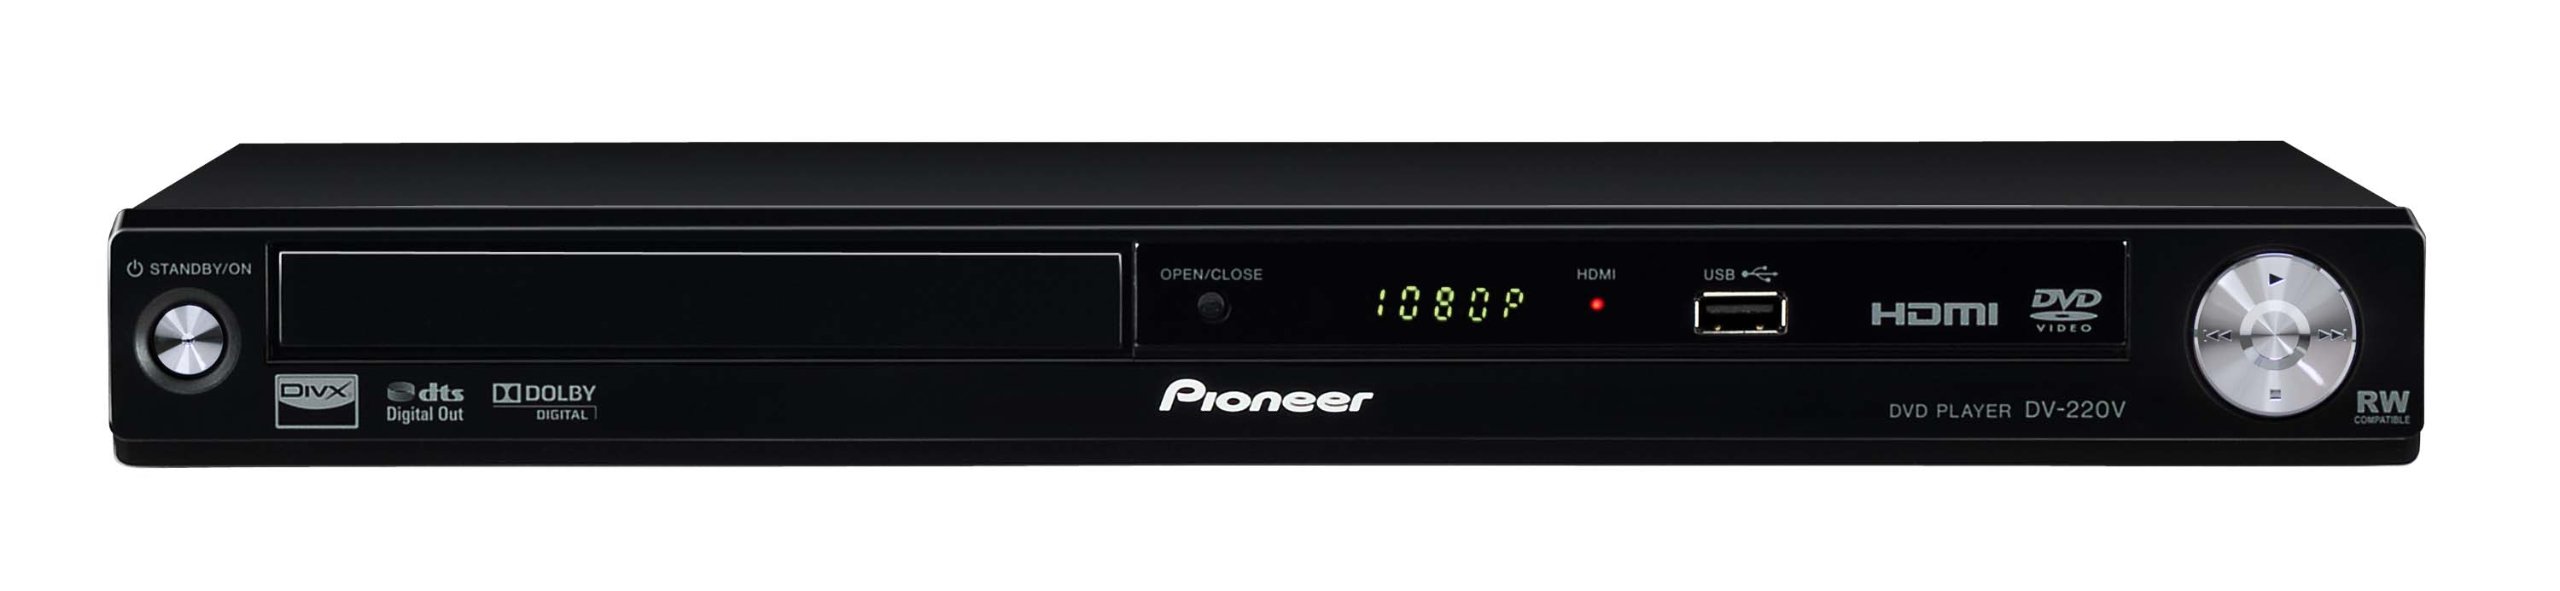 Pioneer DVD Player DV-220V